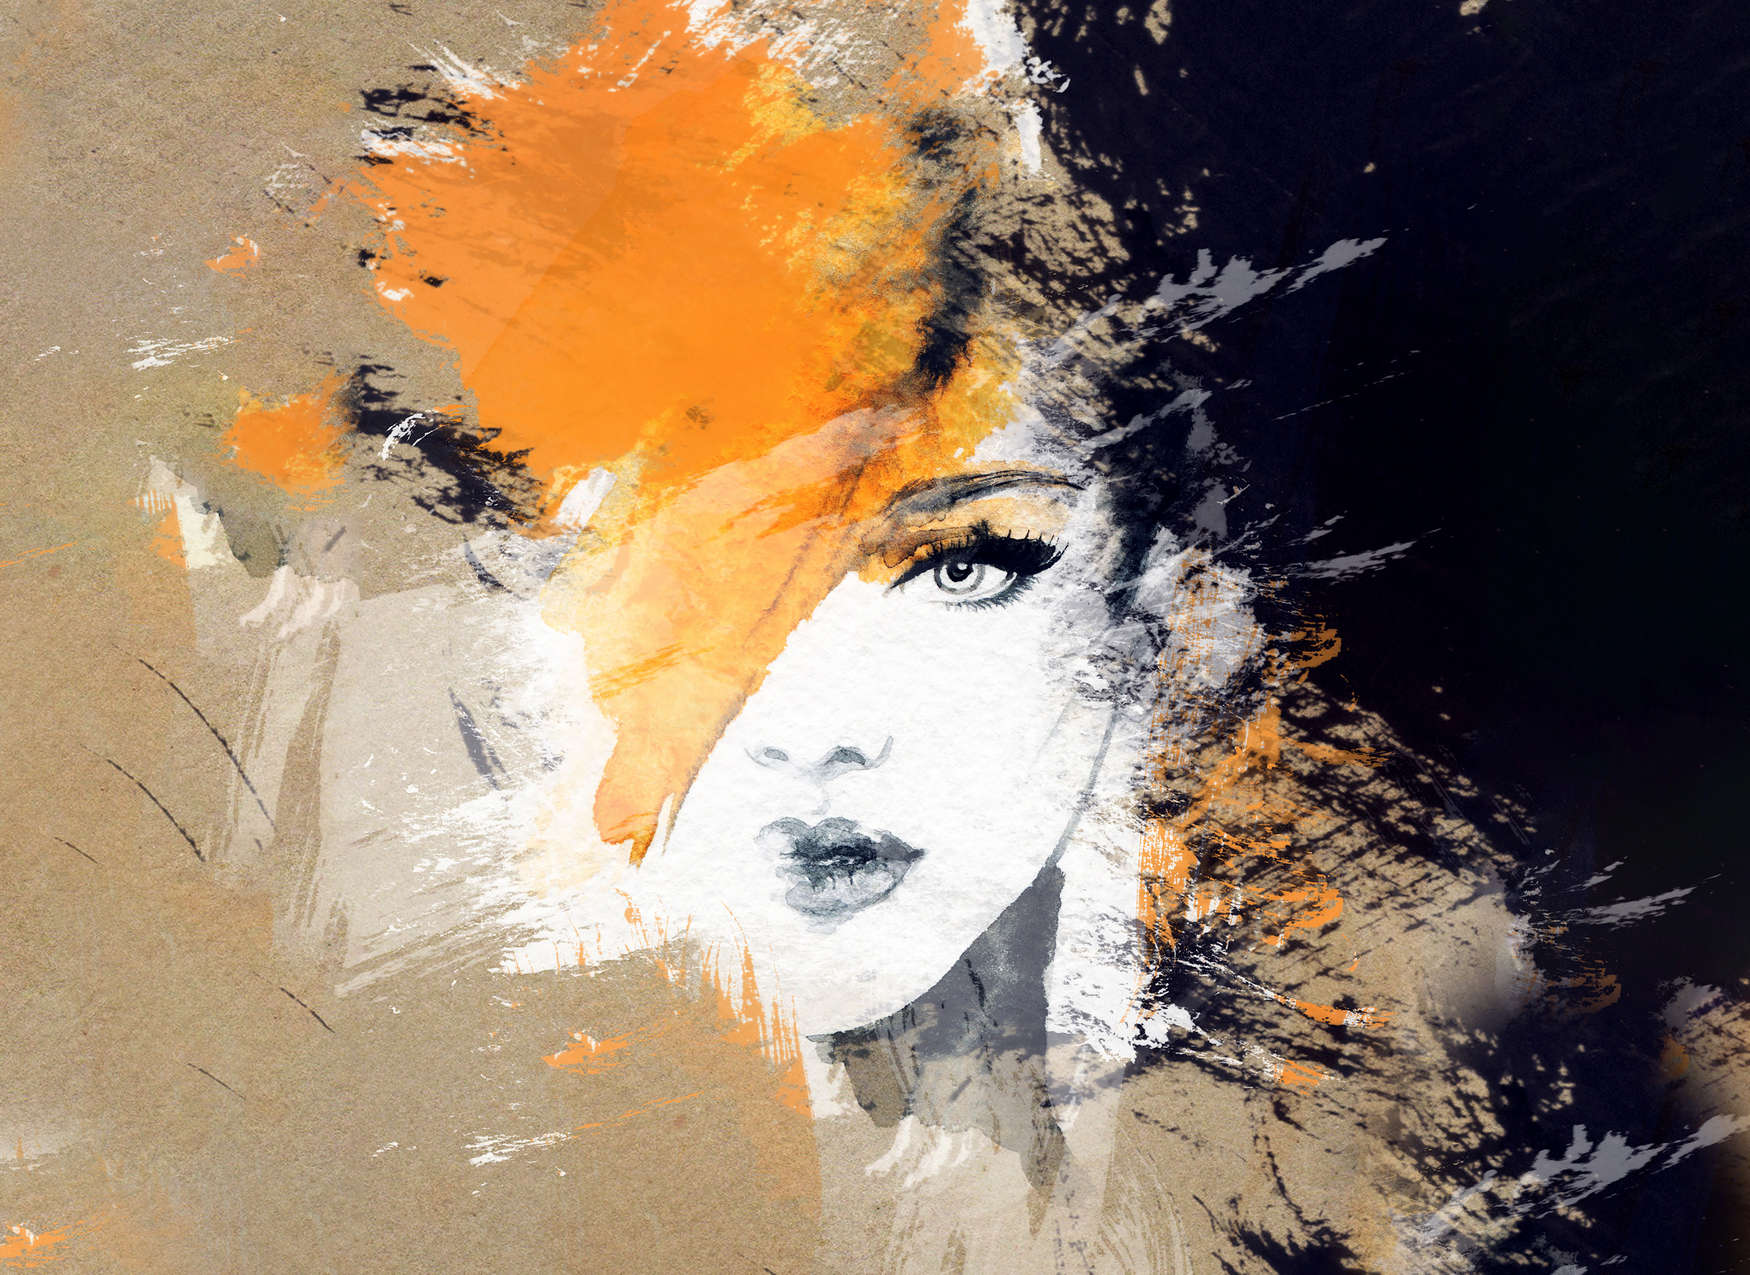             Digital behang met abstracte tekening van een vrouw - Beige, Oranje, Zwart
        